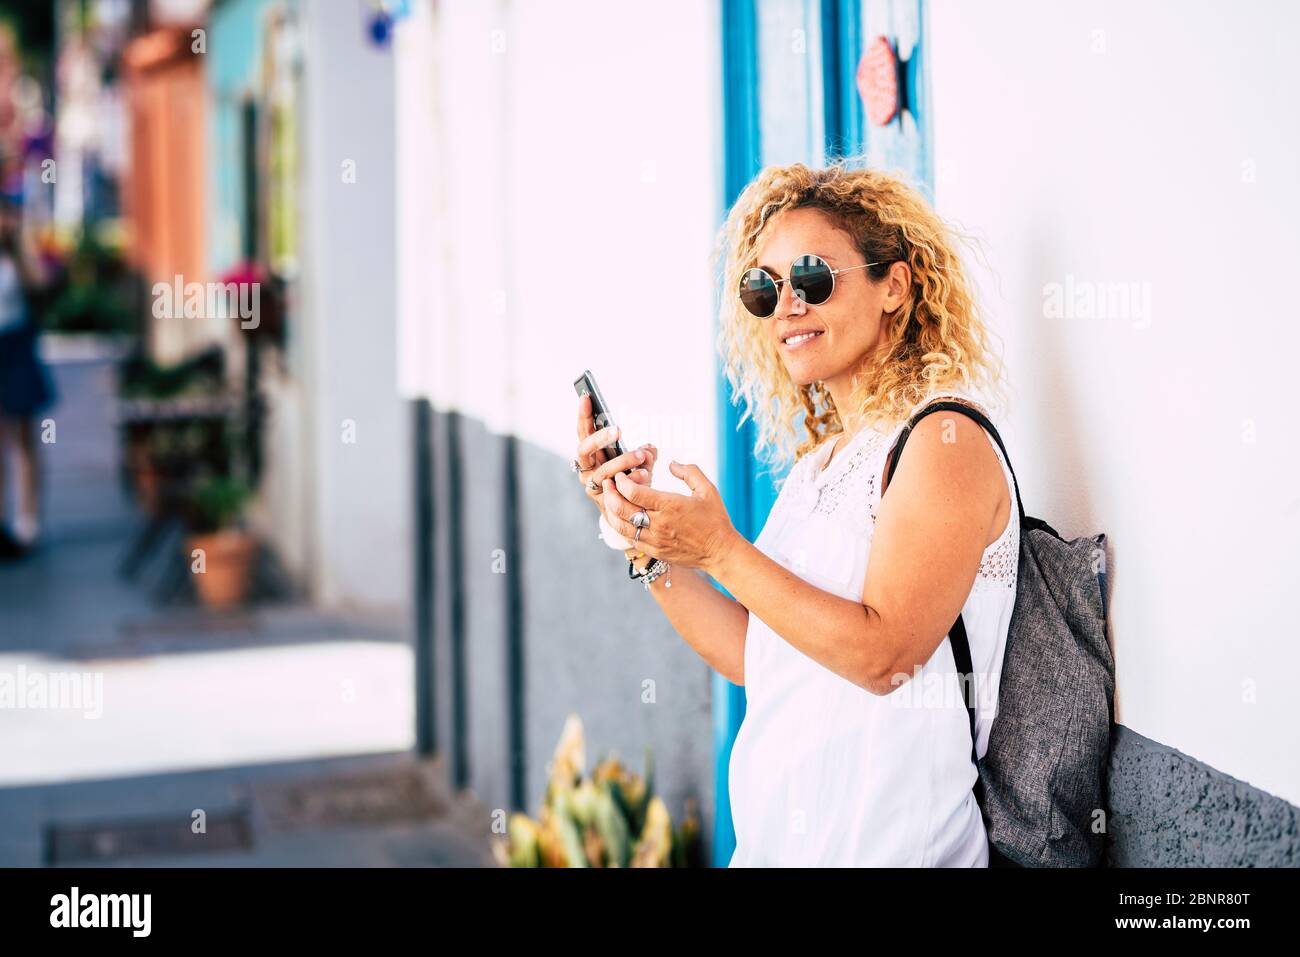 Fröhlich schöne junge kaukasische Frau Porträt im Freien Freizeitaktivitäten - Reisen Menschen und Tourismus Tourist mit Rucksack und Sonnenbrille genießen die Straße zu Fuß Stockfoto